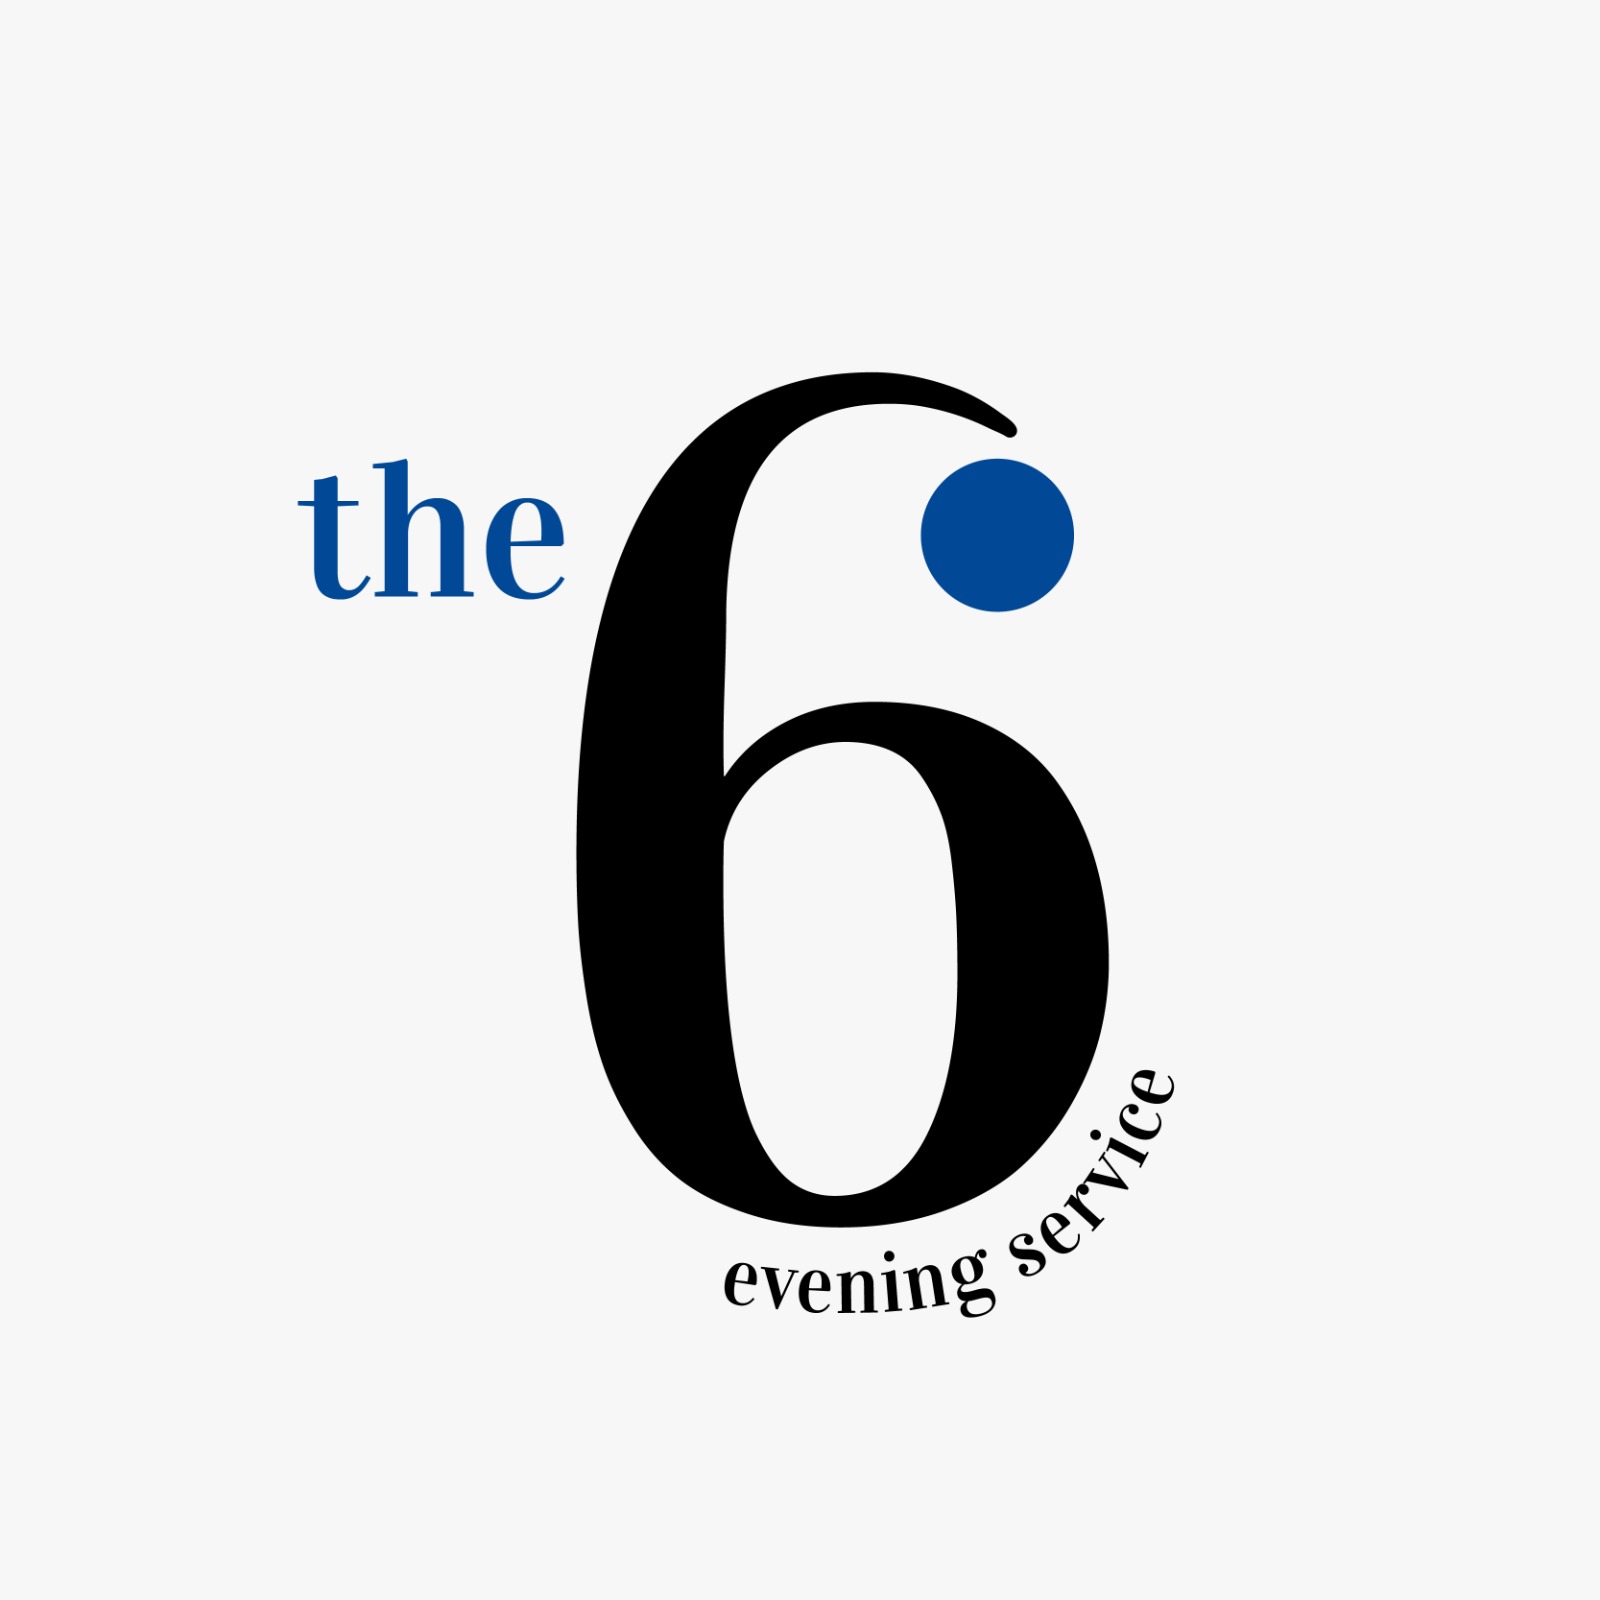 6pm service logo